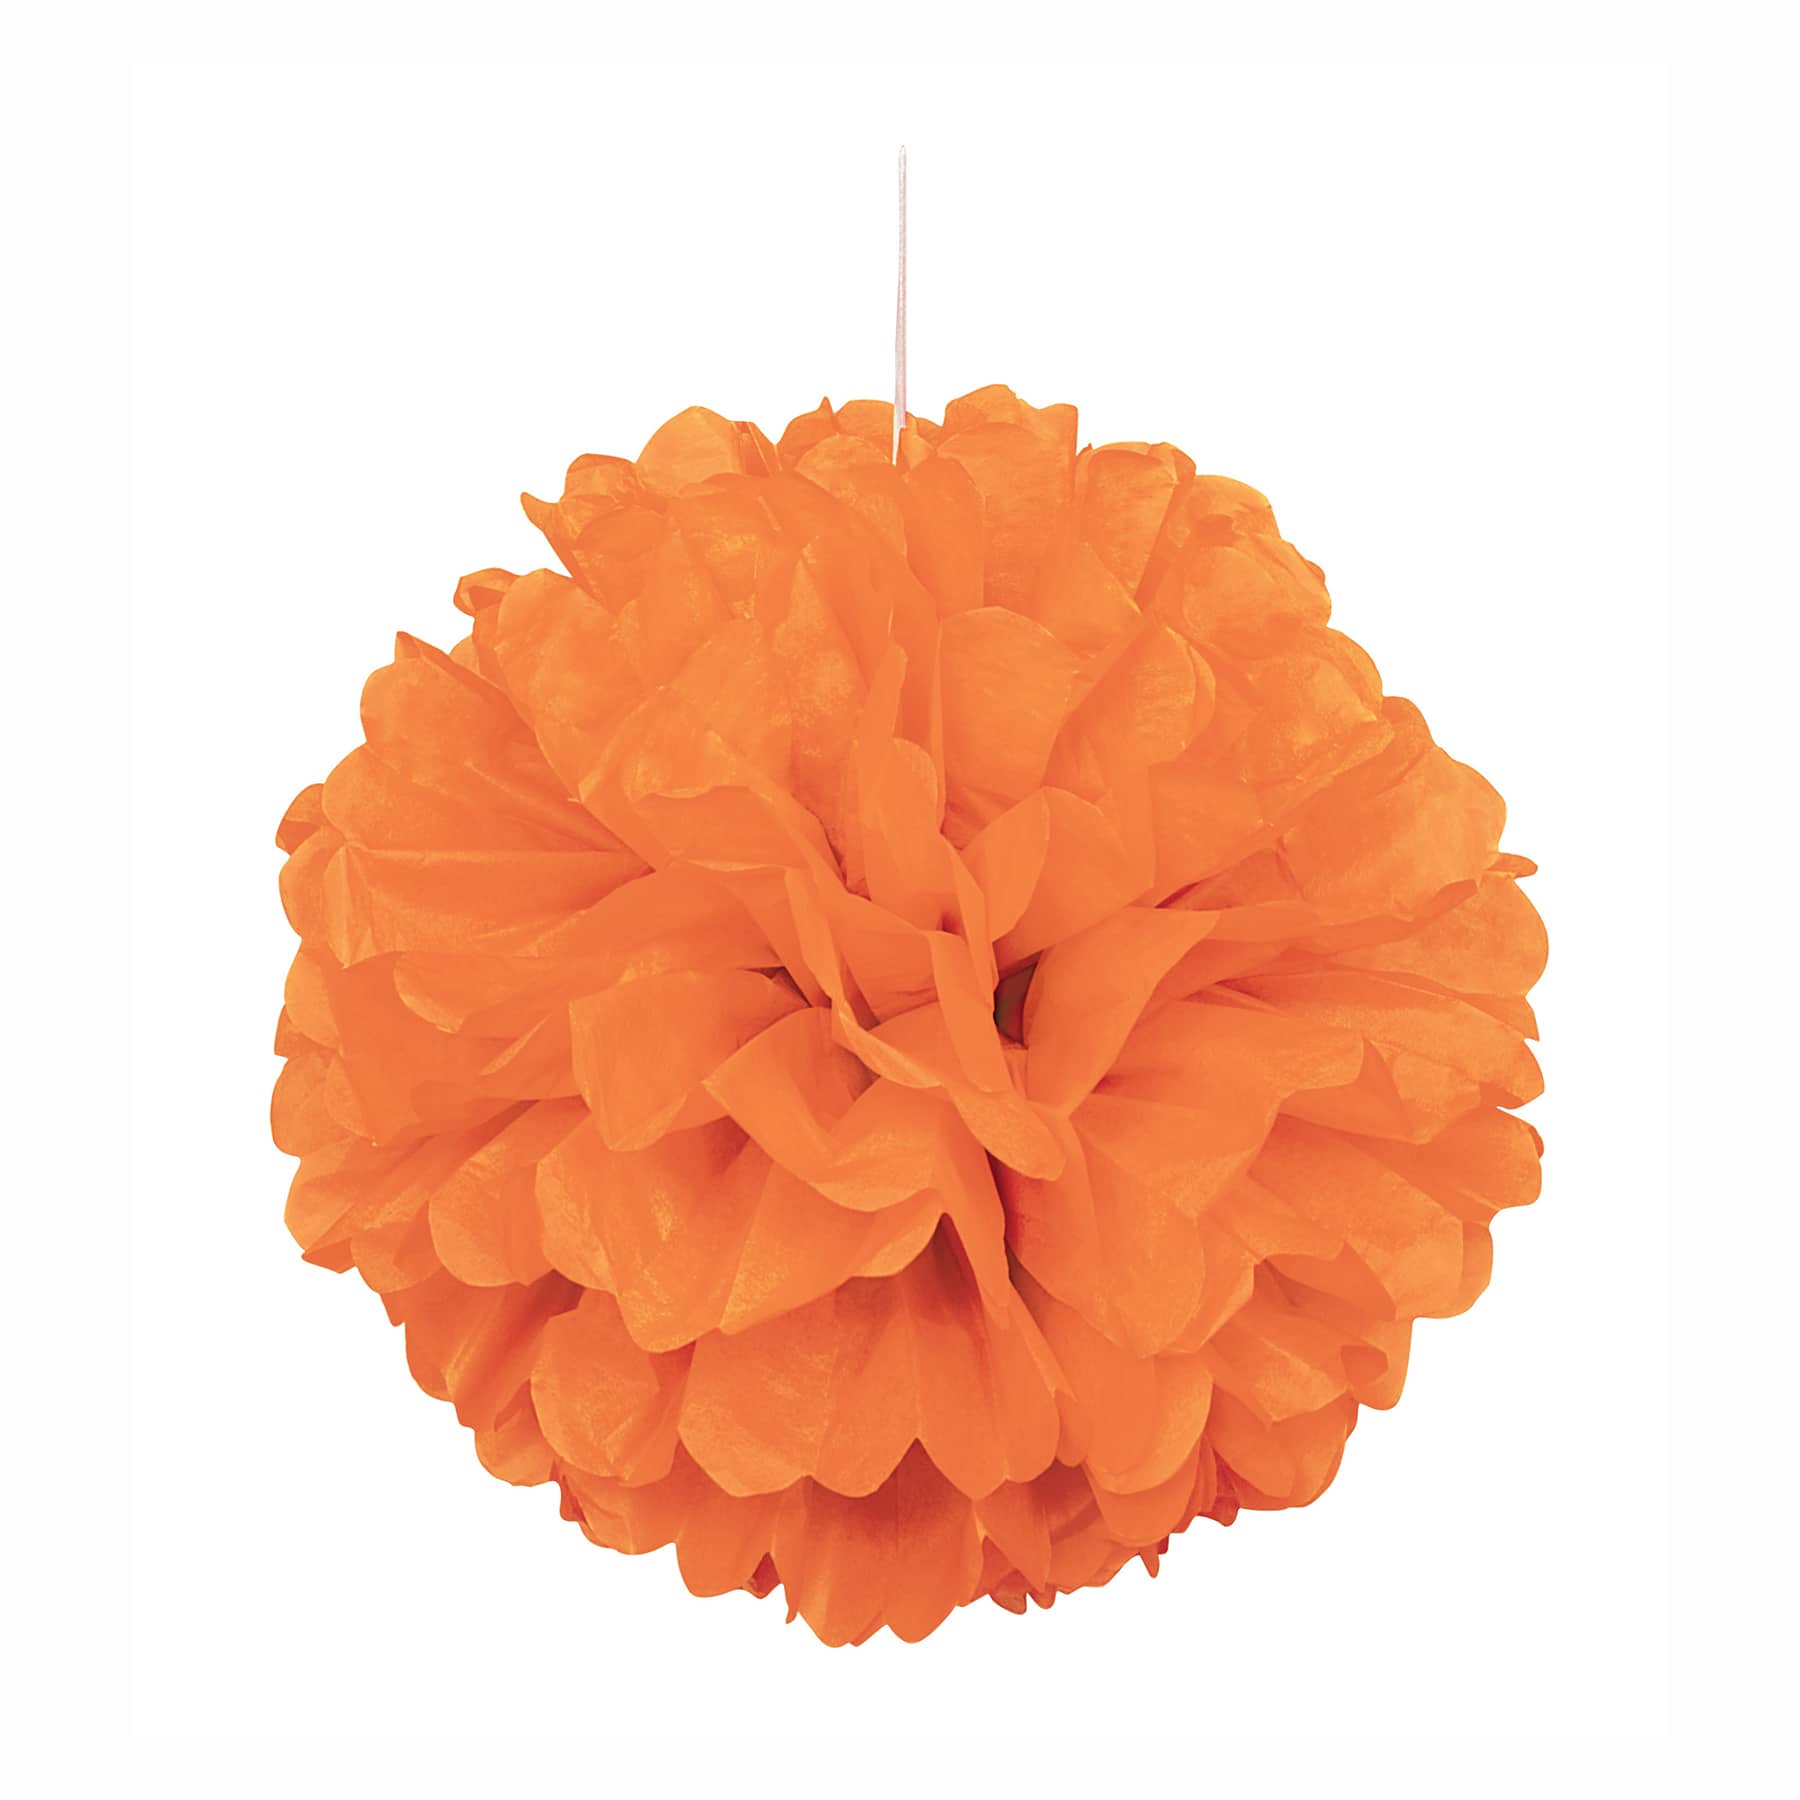 Orange Tissue Paper Puff | Orange Party Decorations